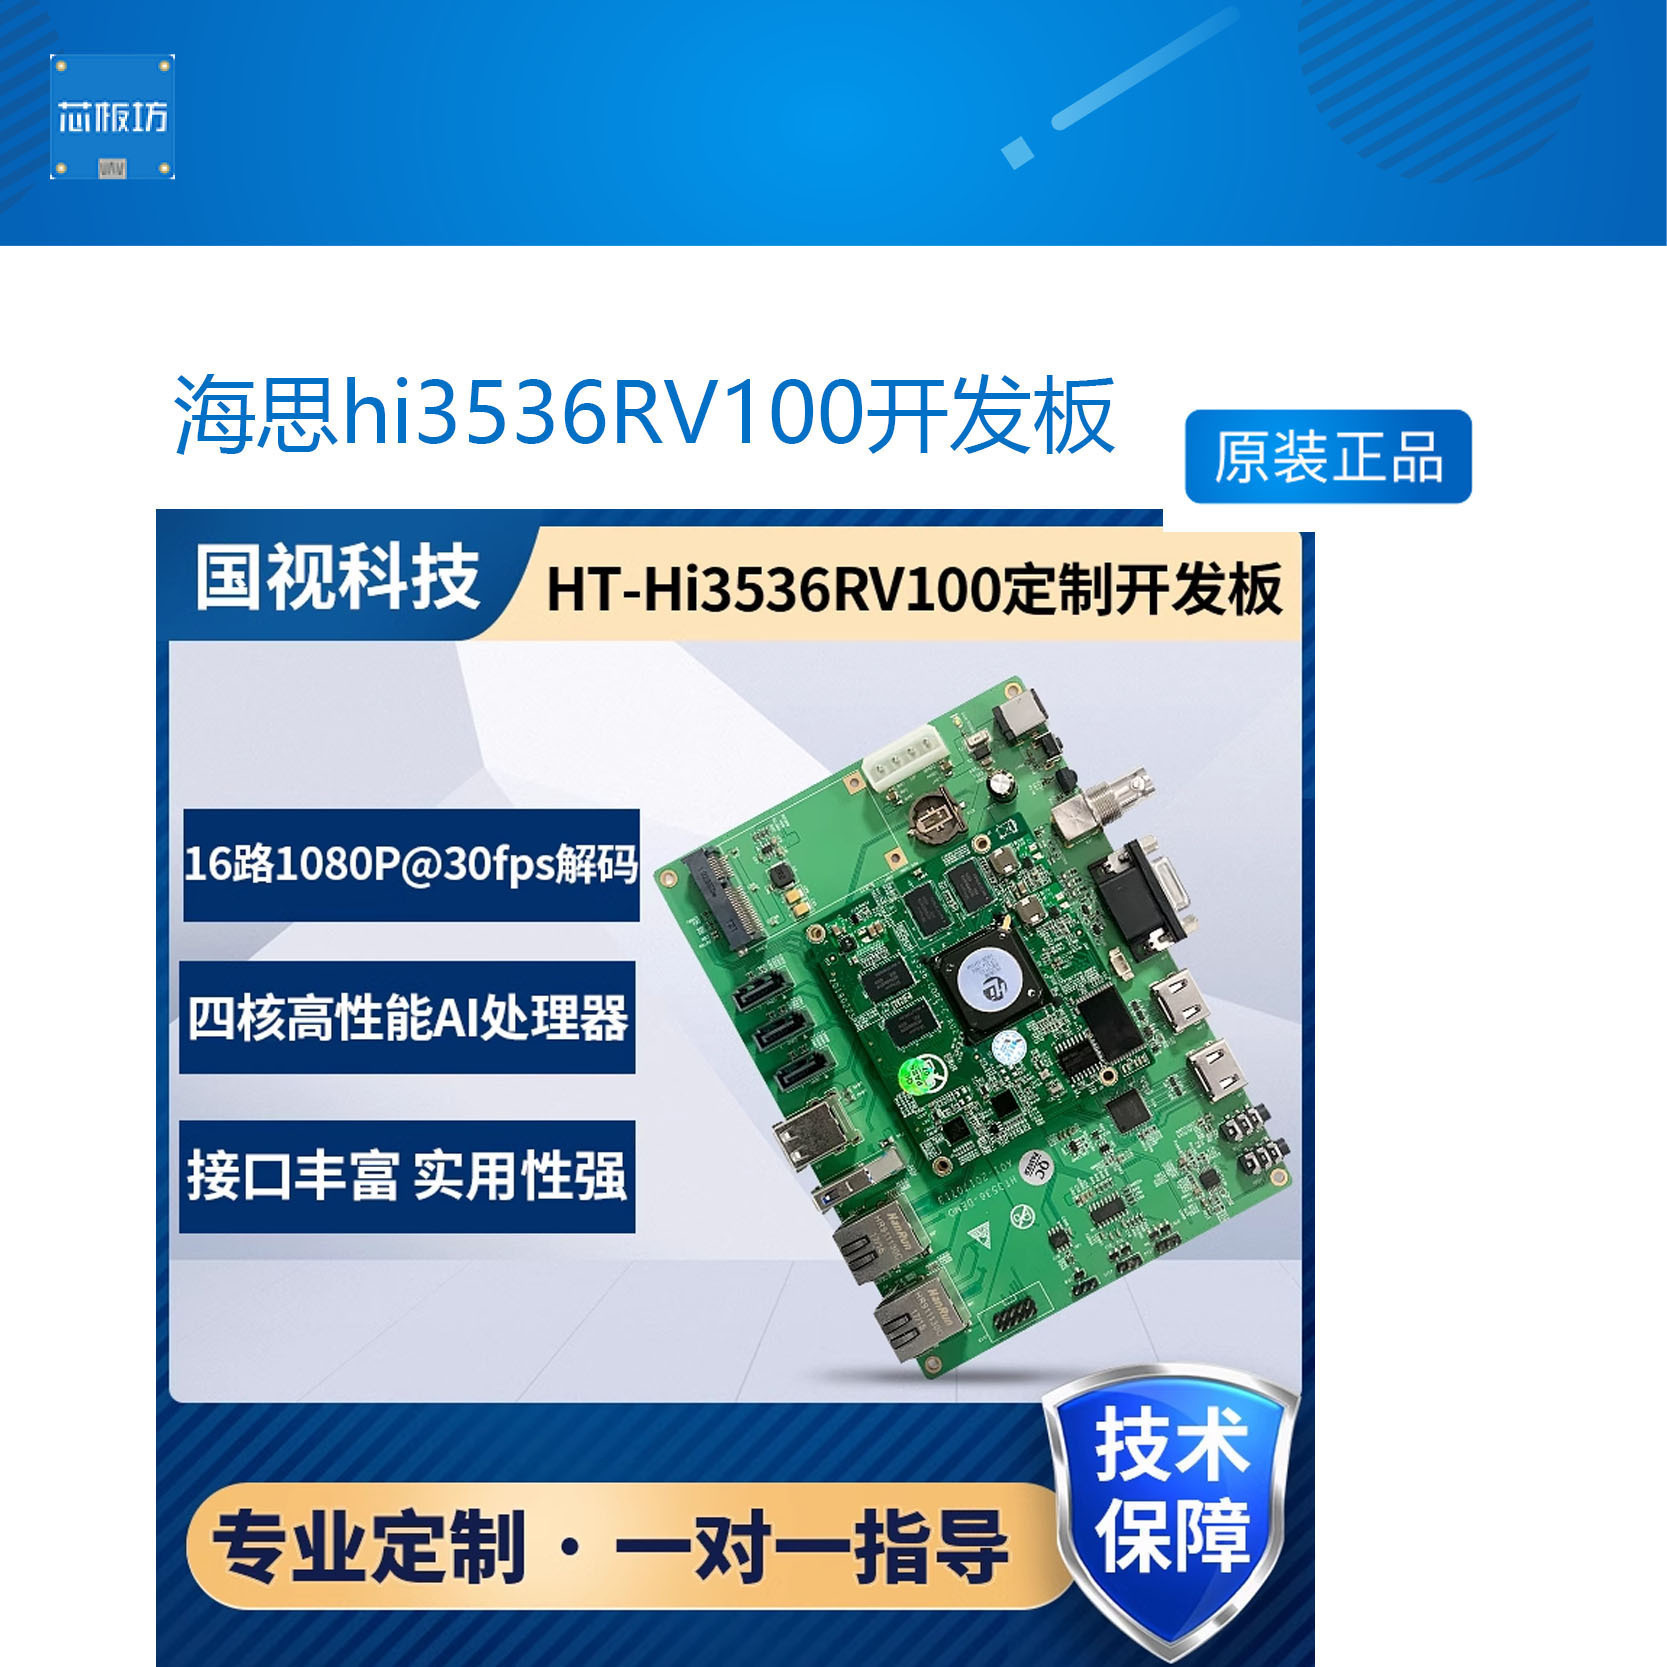 hi3536RV100H264/265解码ARMA17